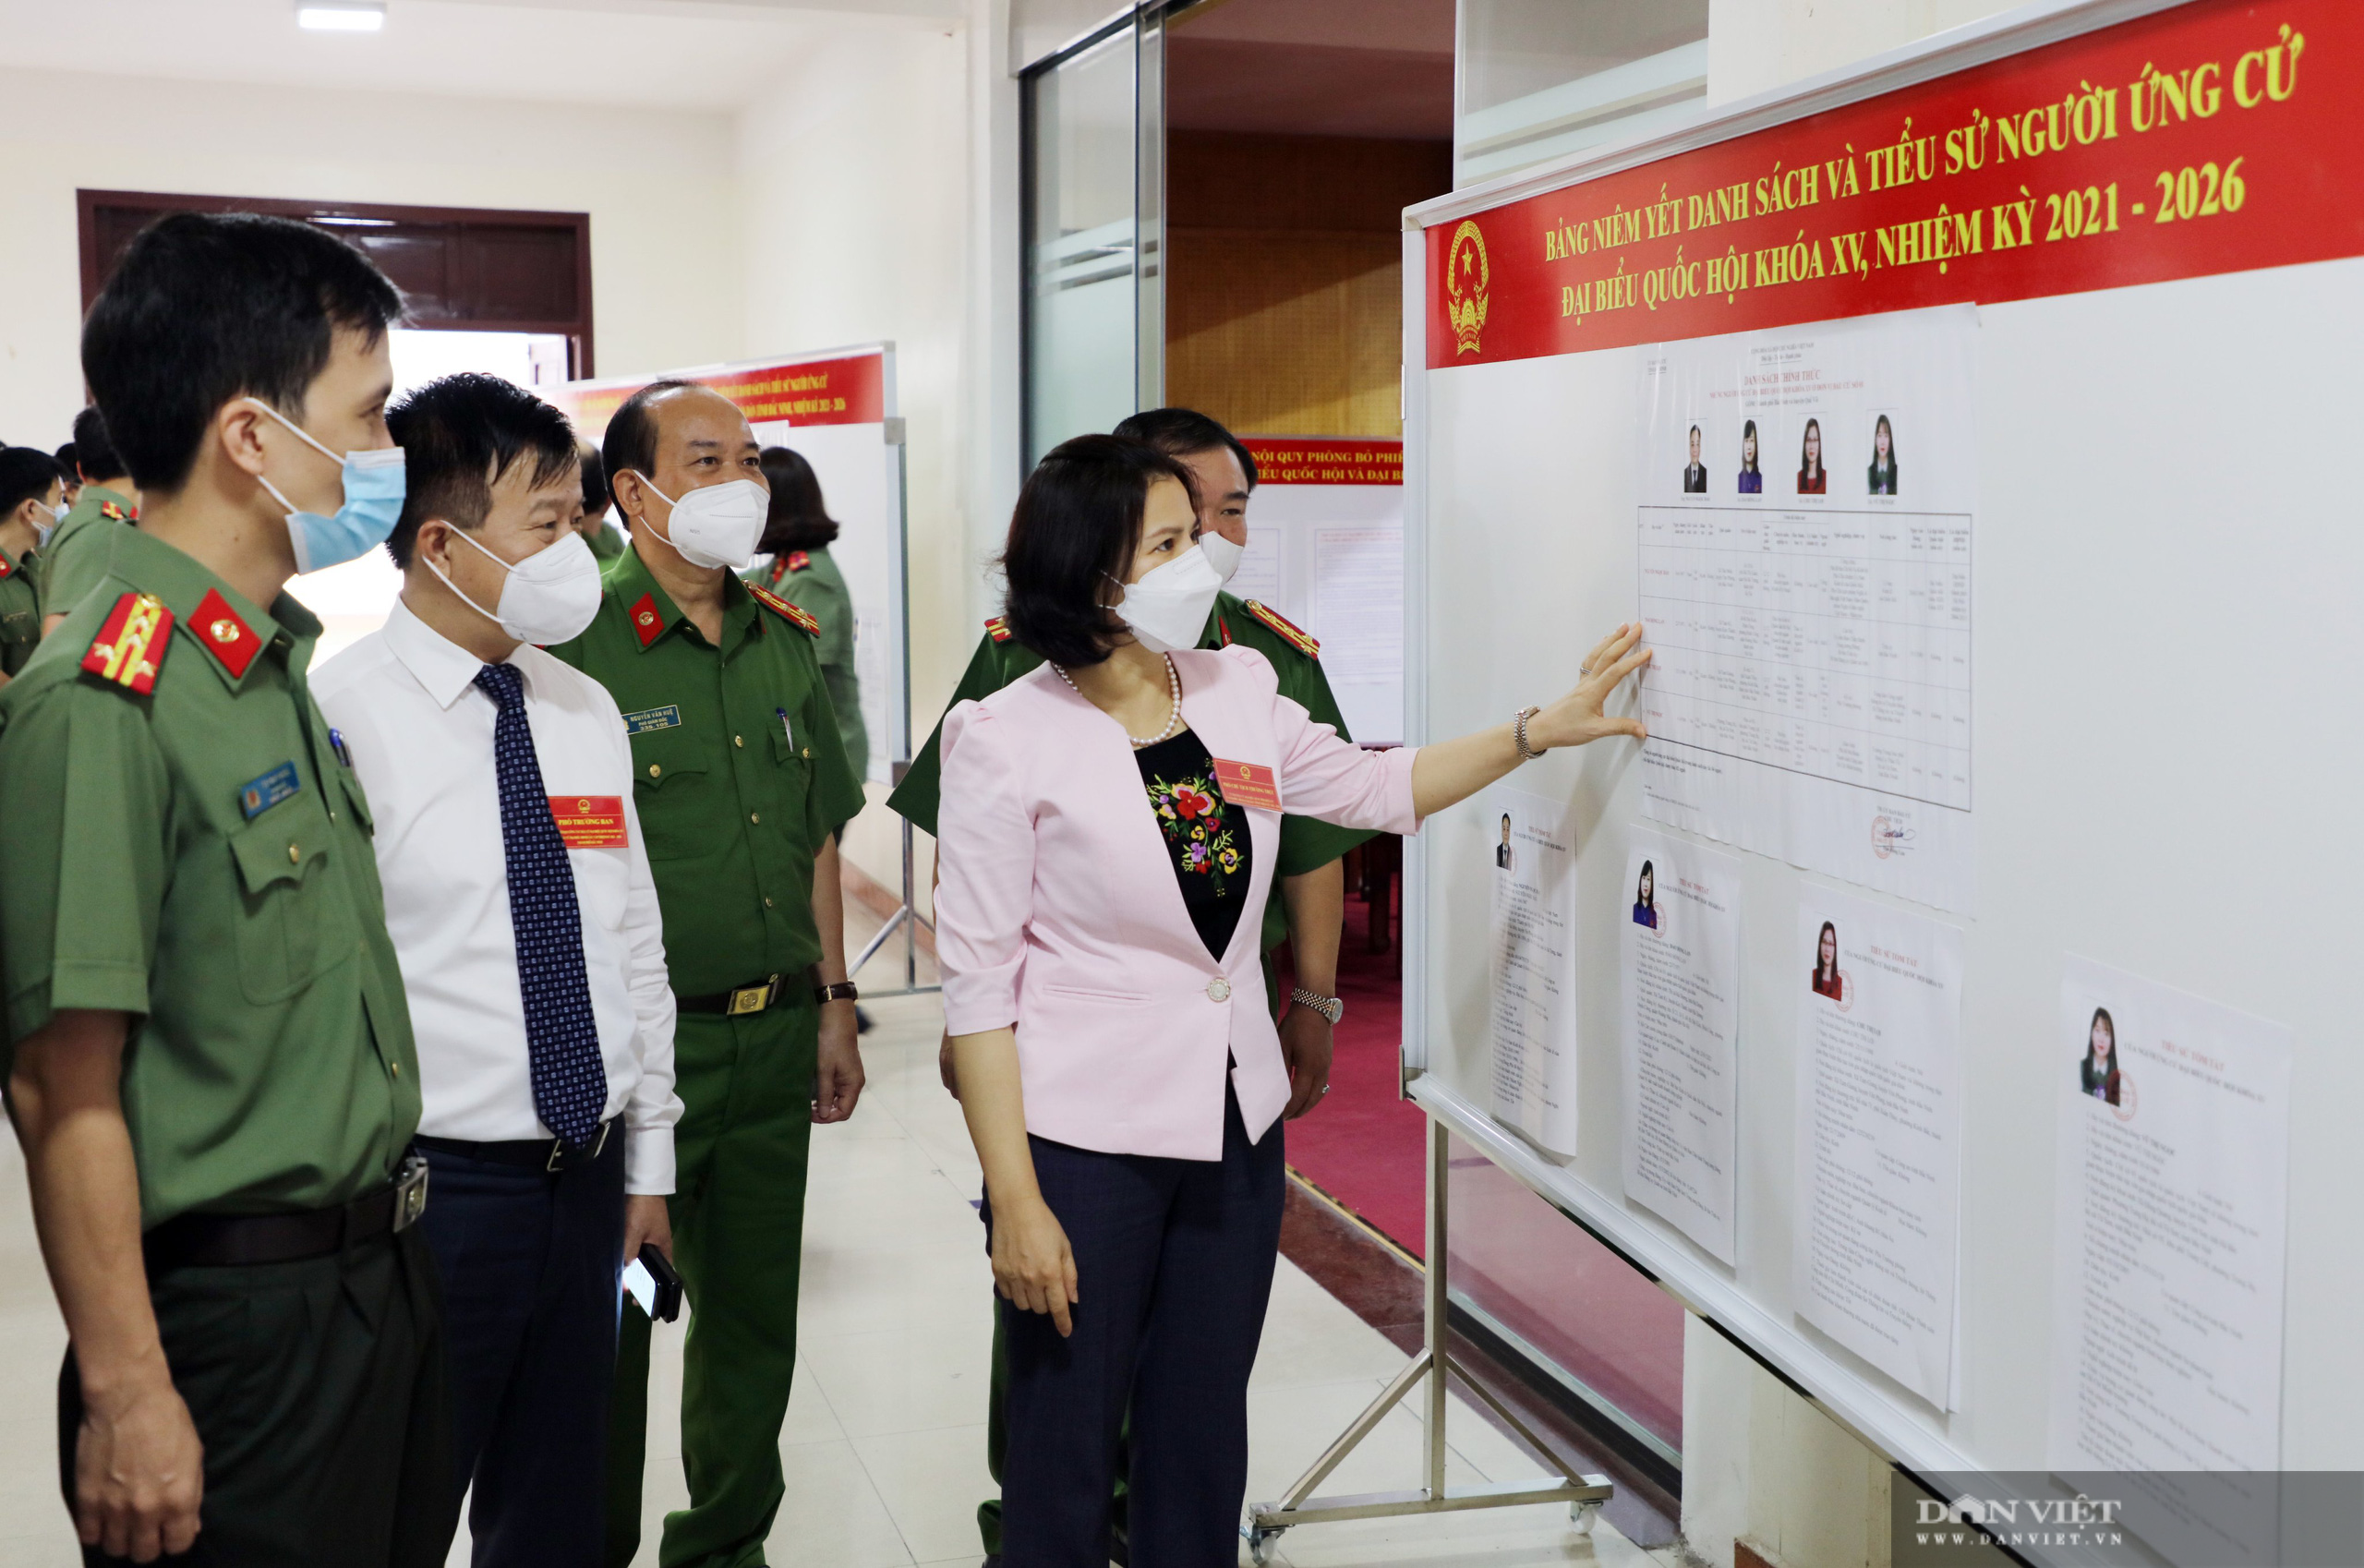 Bắc Ninh: Ngày bầu cử đặc biệt lịch sử trong khu cách ly Covid-19 - Ảnh 10.